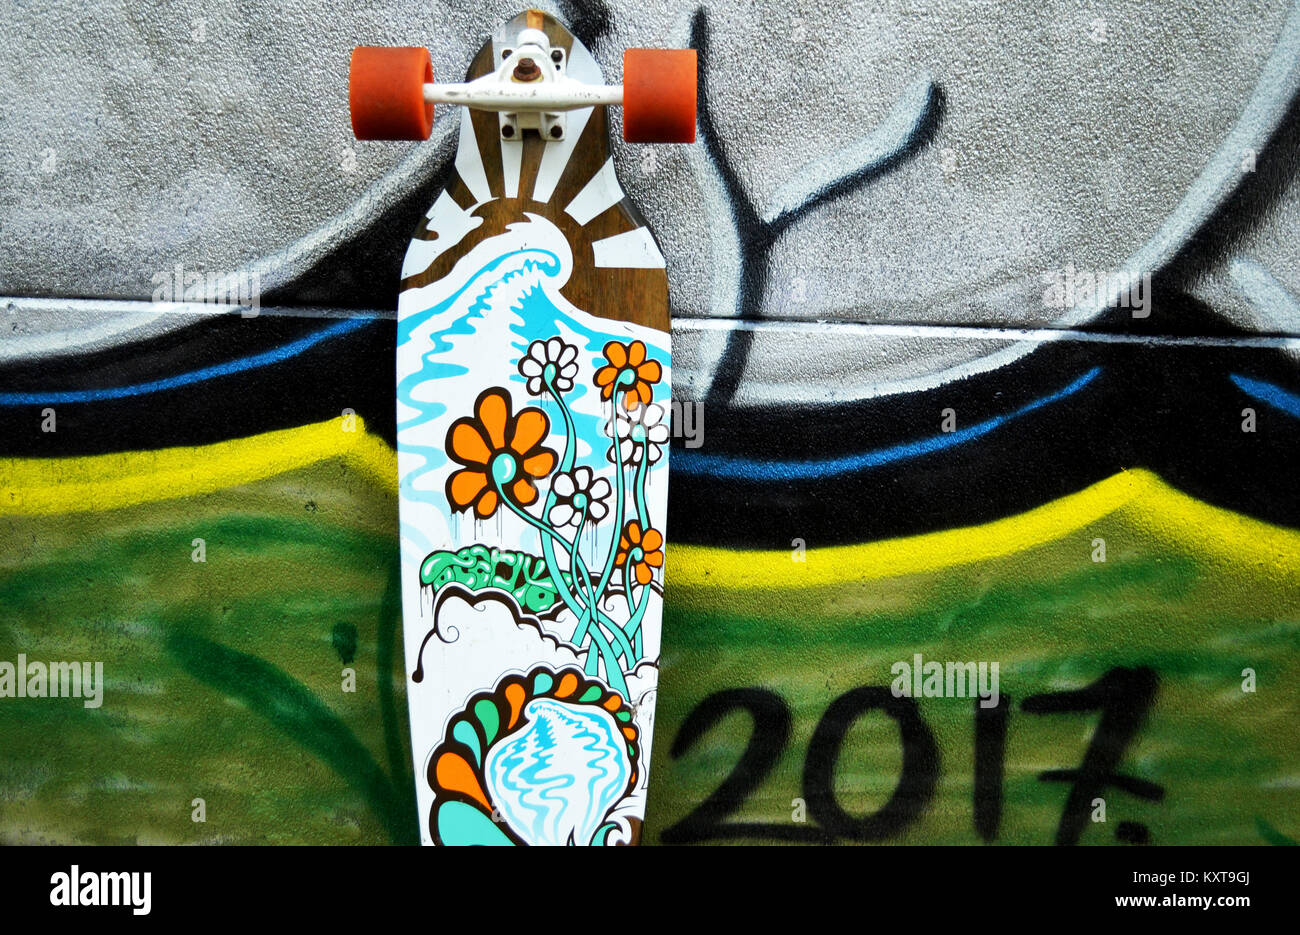 Longboard Skateboard lehnte sich gegen die Wand mit Graffiti  Stockfotografie - Alamy